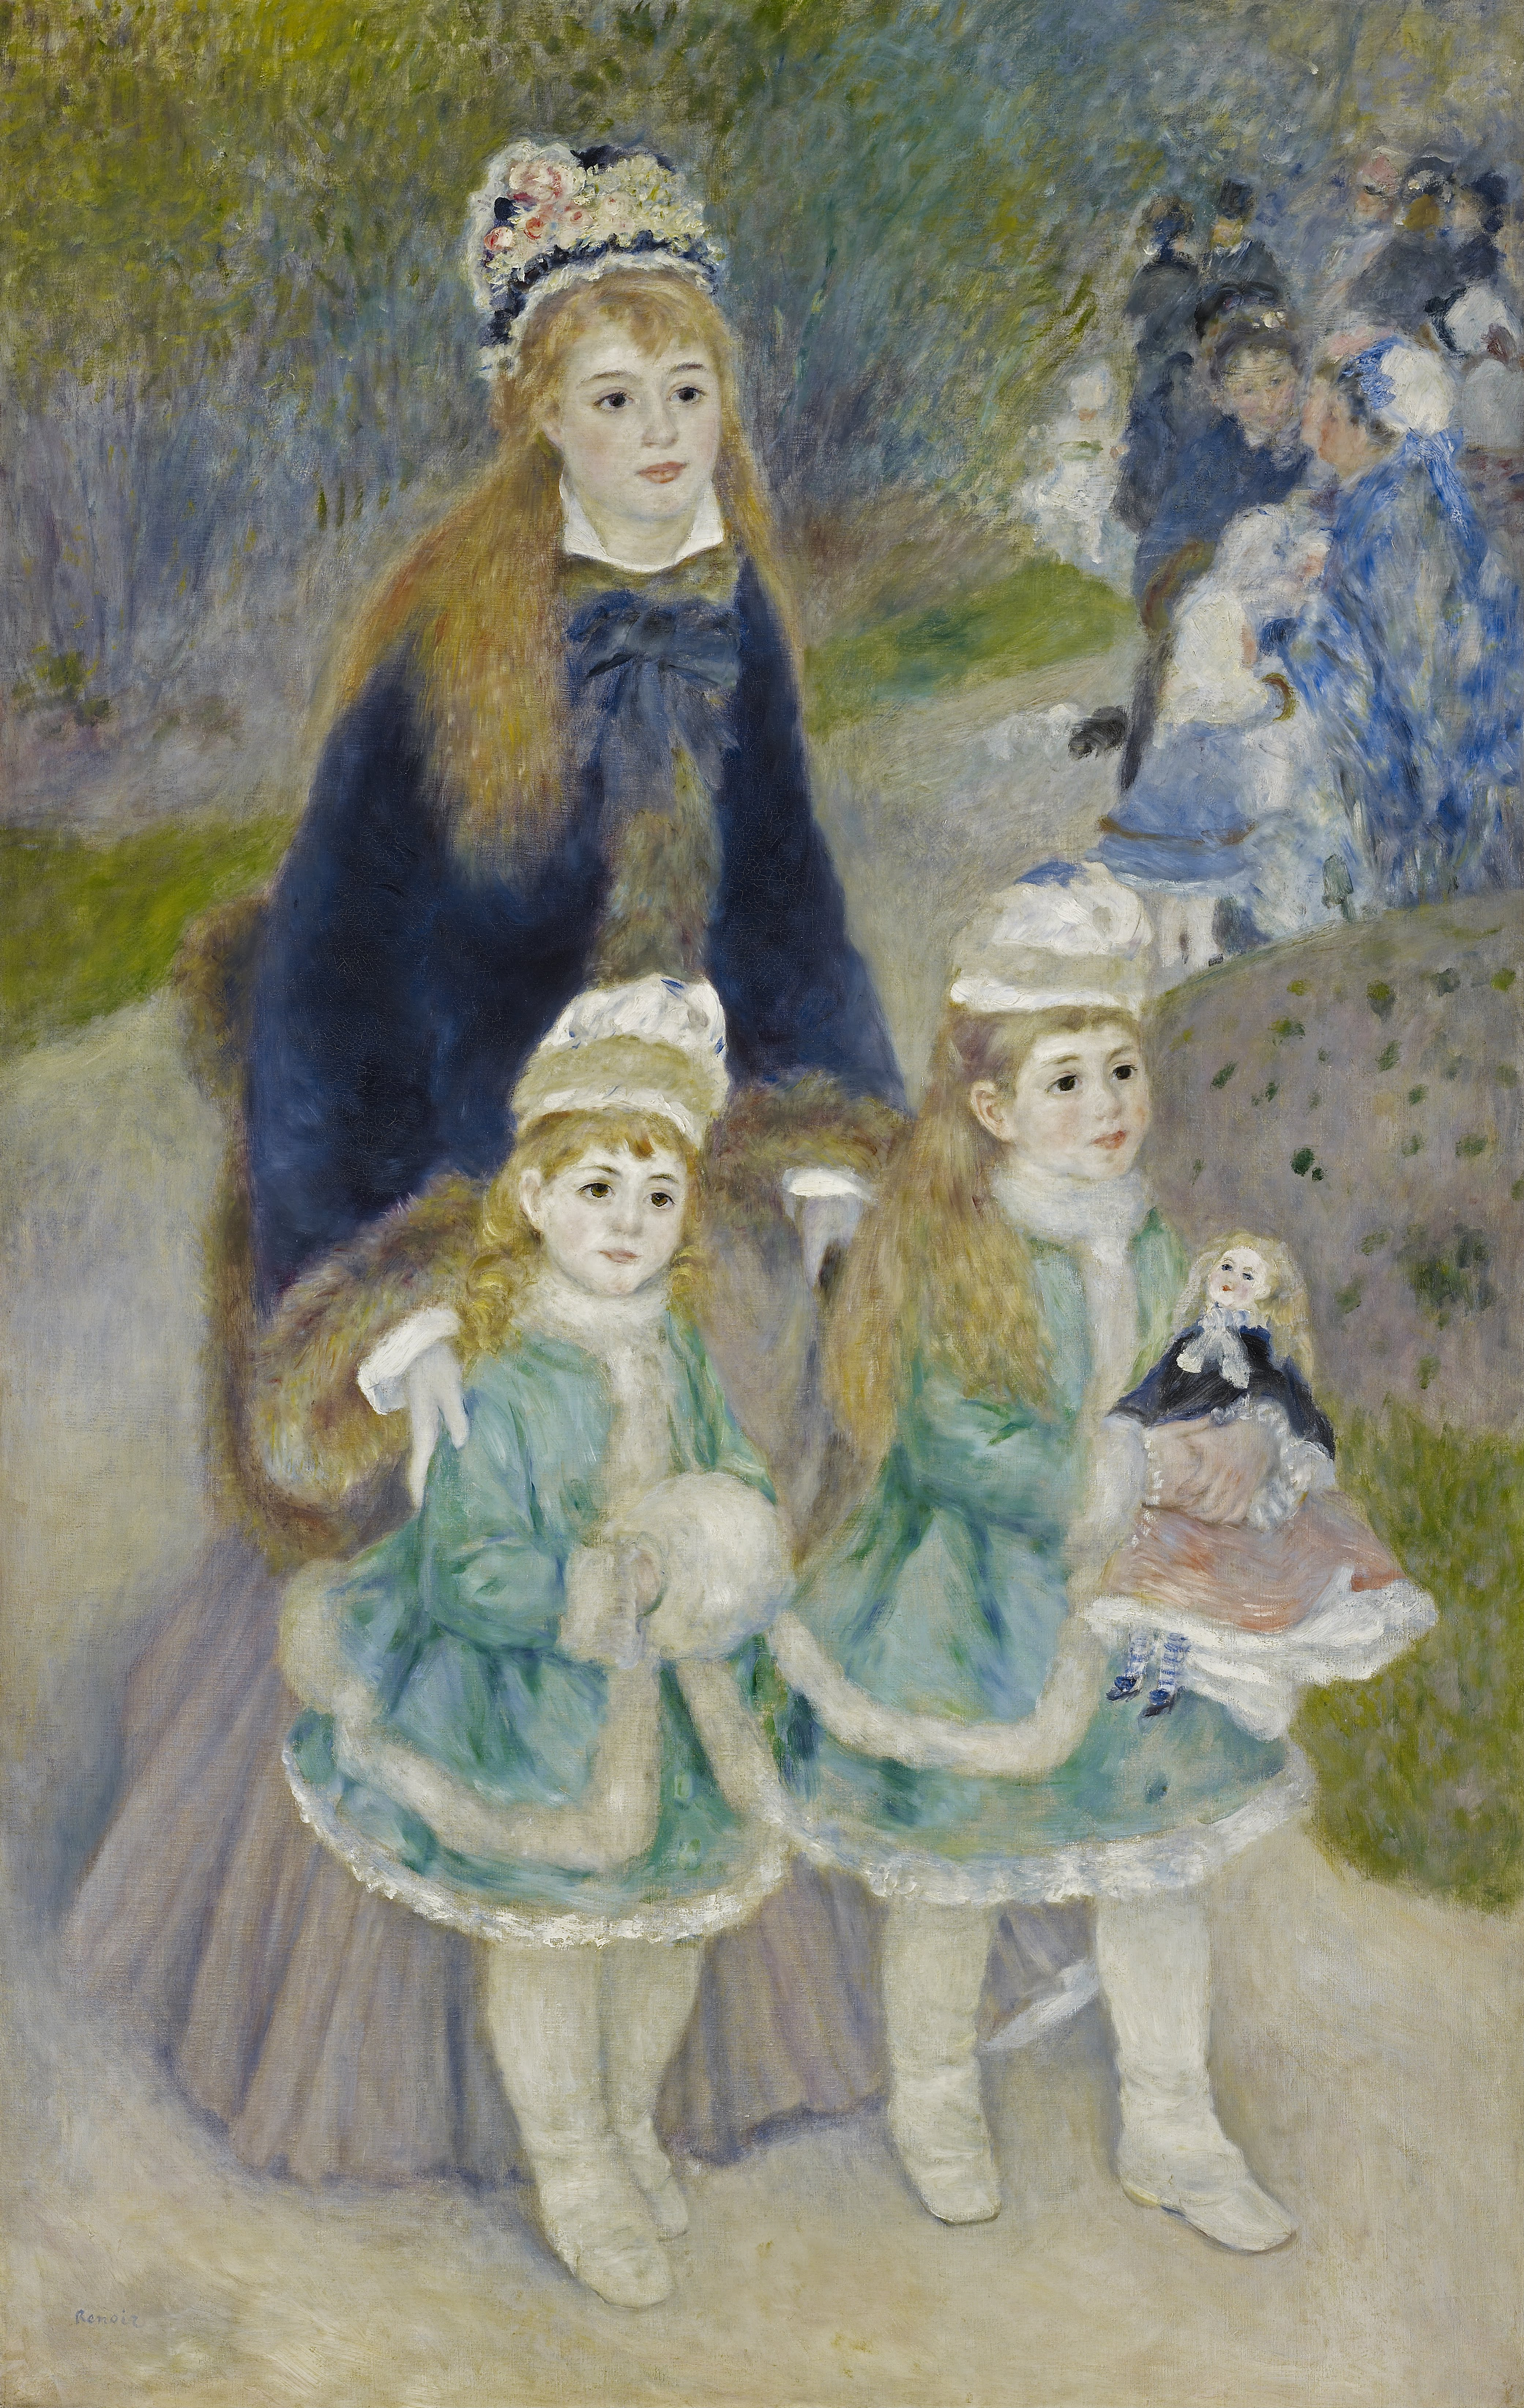 La Promenade by Pierre-Auguste Renoir - 1874-1876 - 170.2 x 108.3 cm The Frick Collection